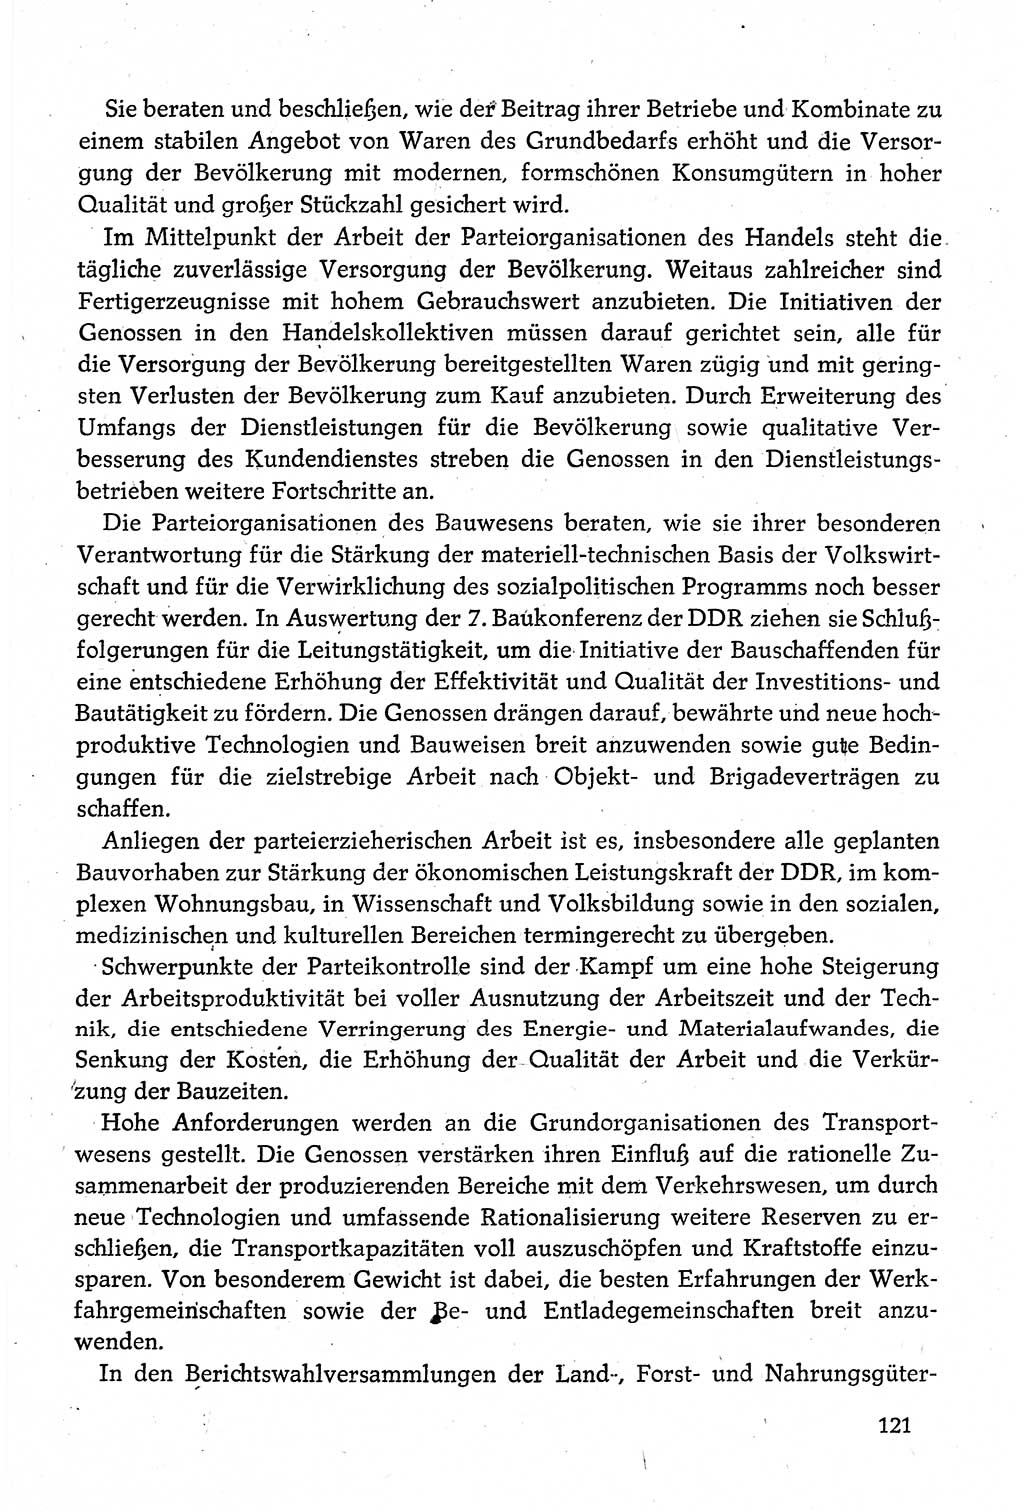 Dokumente der Sozialistischen Einheitspartei Deutschlands (SED) [Deutsche Demokratische Republik (DDR)] 1980-1981, Seite 121 (Dok. SED DDR 1980-1981, S. 121)